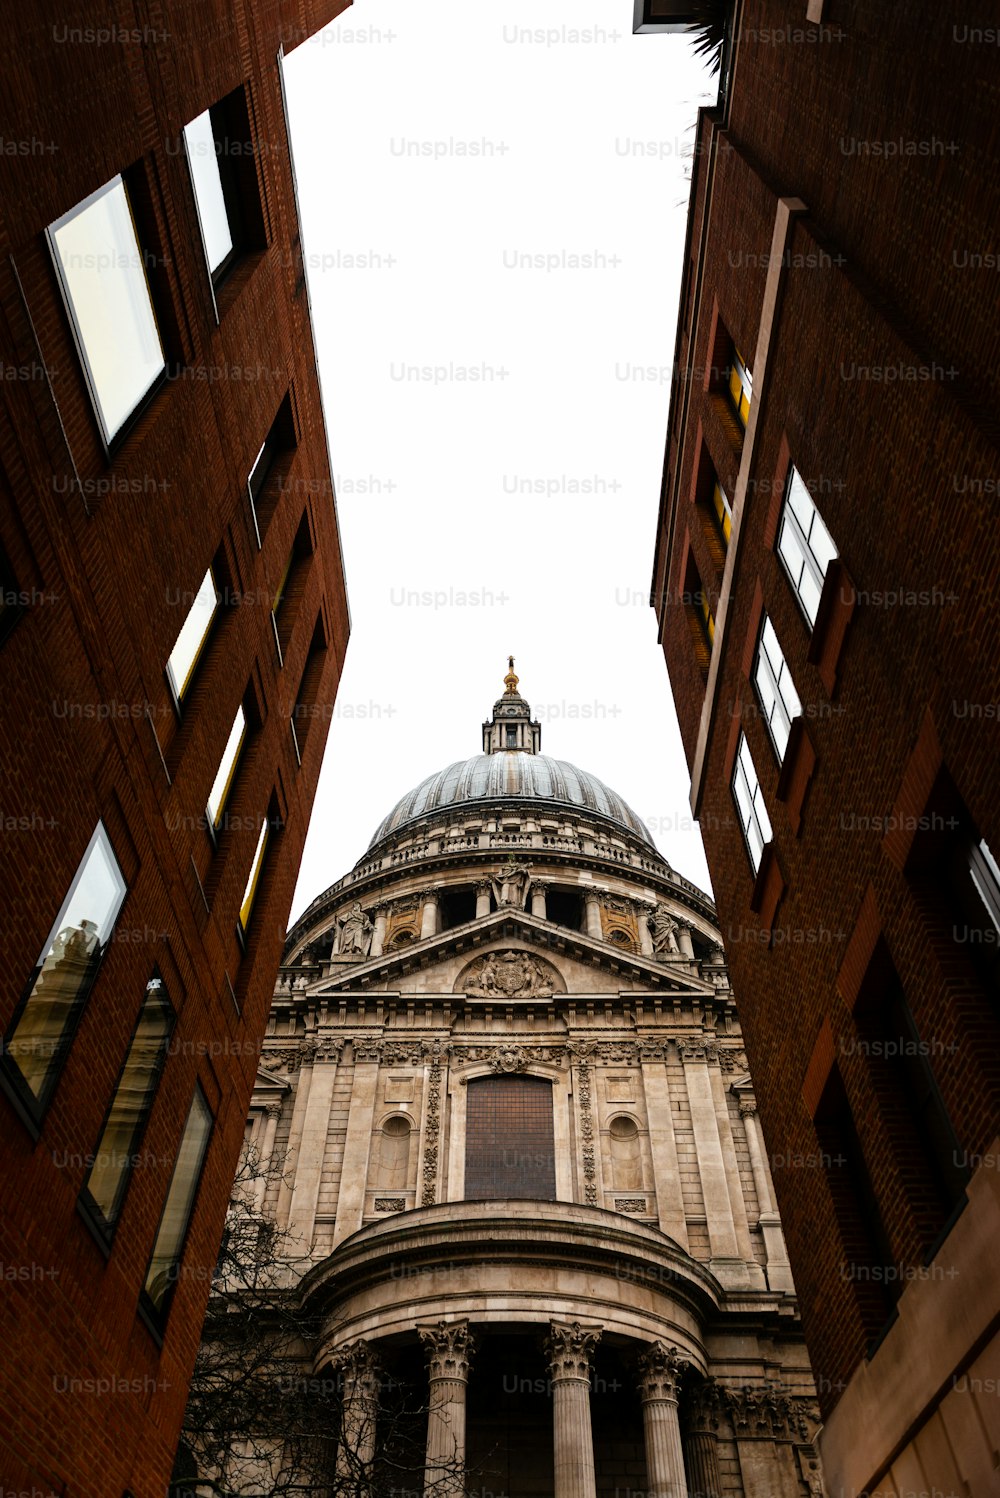 Vista lateral da Catedral de St.Paul, em Londres, vista através de uma rua estreita. Construído após o Grande Incêndio de Londres de 1666, é a obra-prima de Christopher Wren e uma das atrações mais turísticas da cidade.